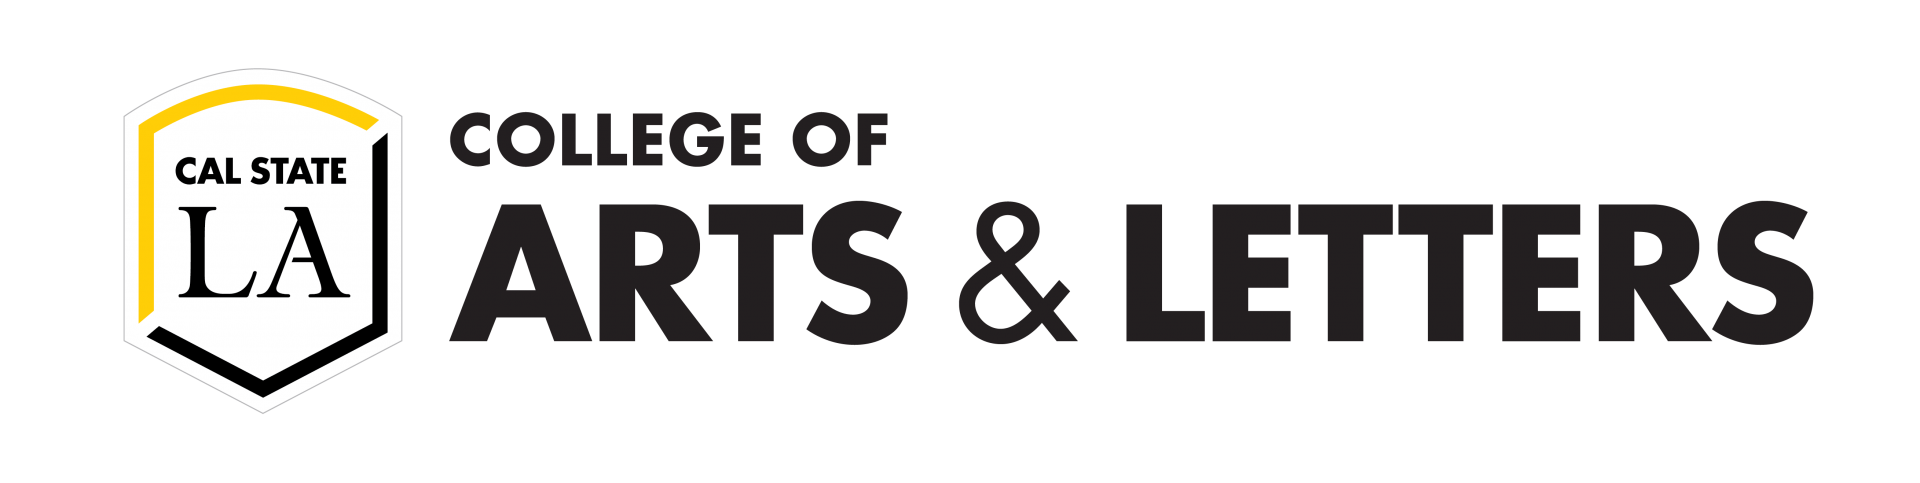 Cal State LA , College Arts & Letters Logo